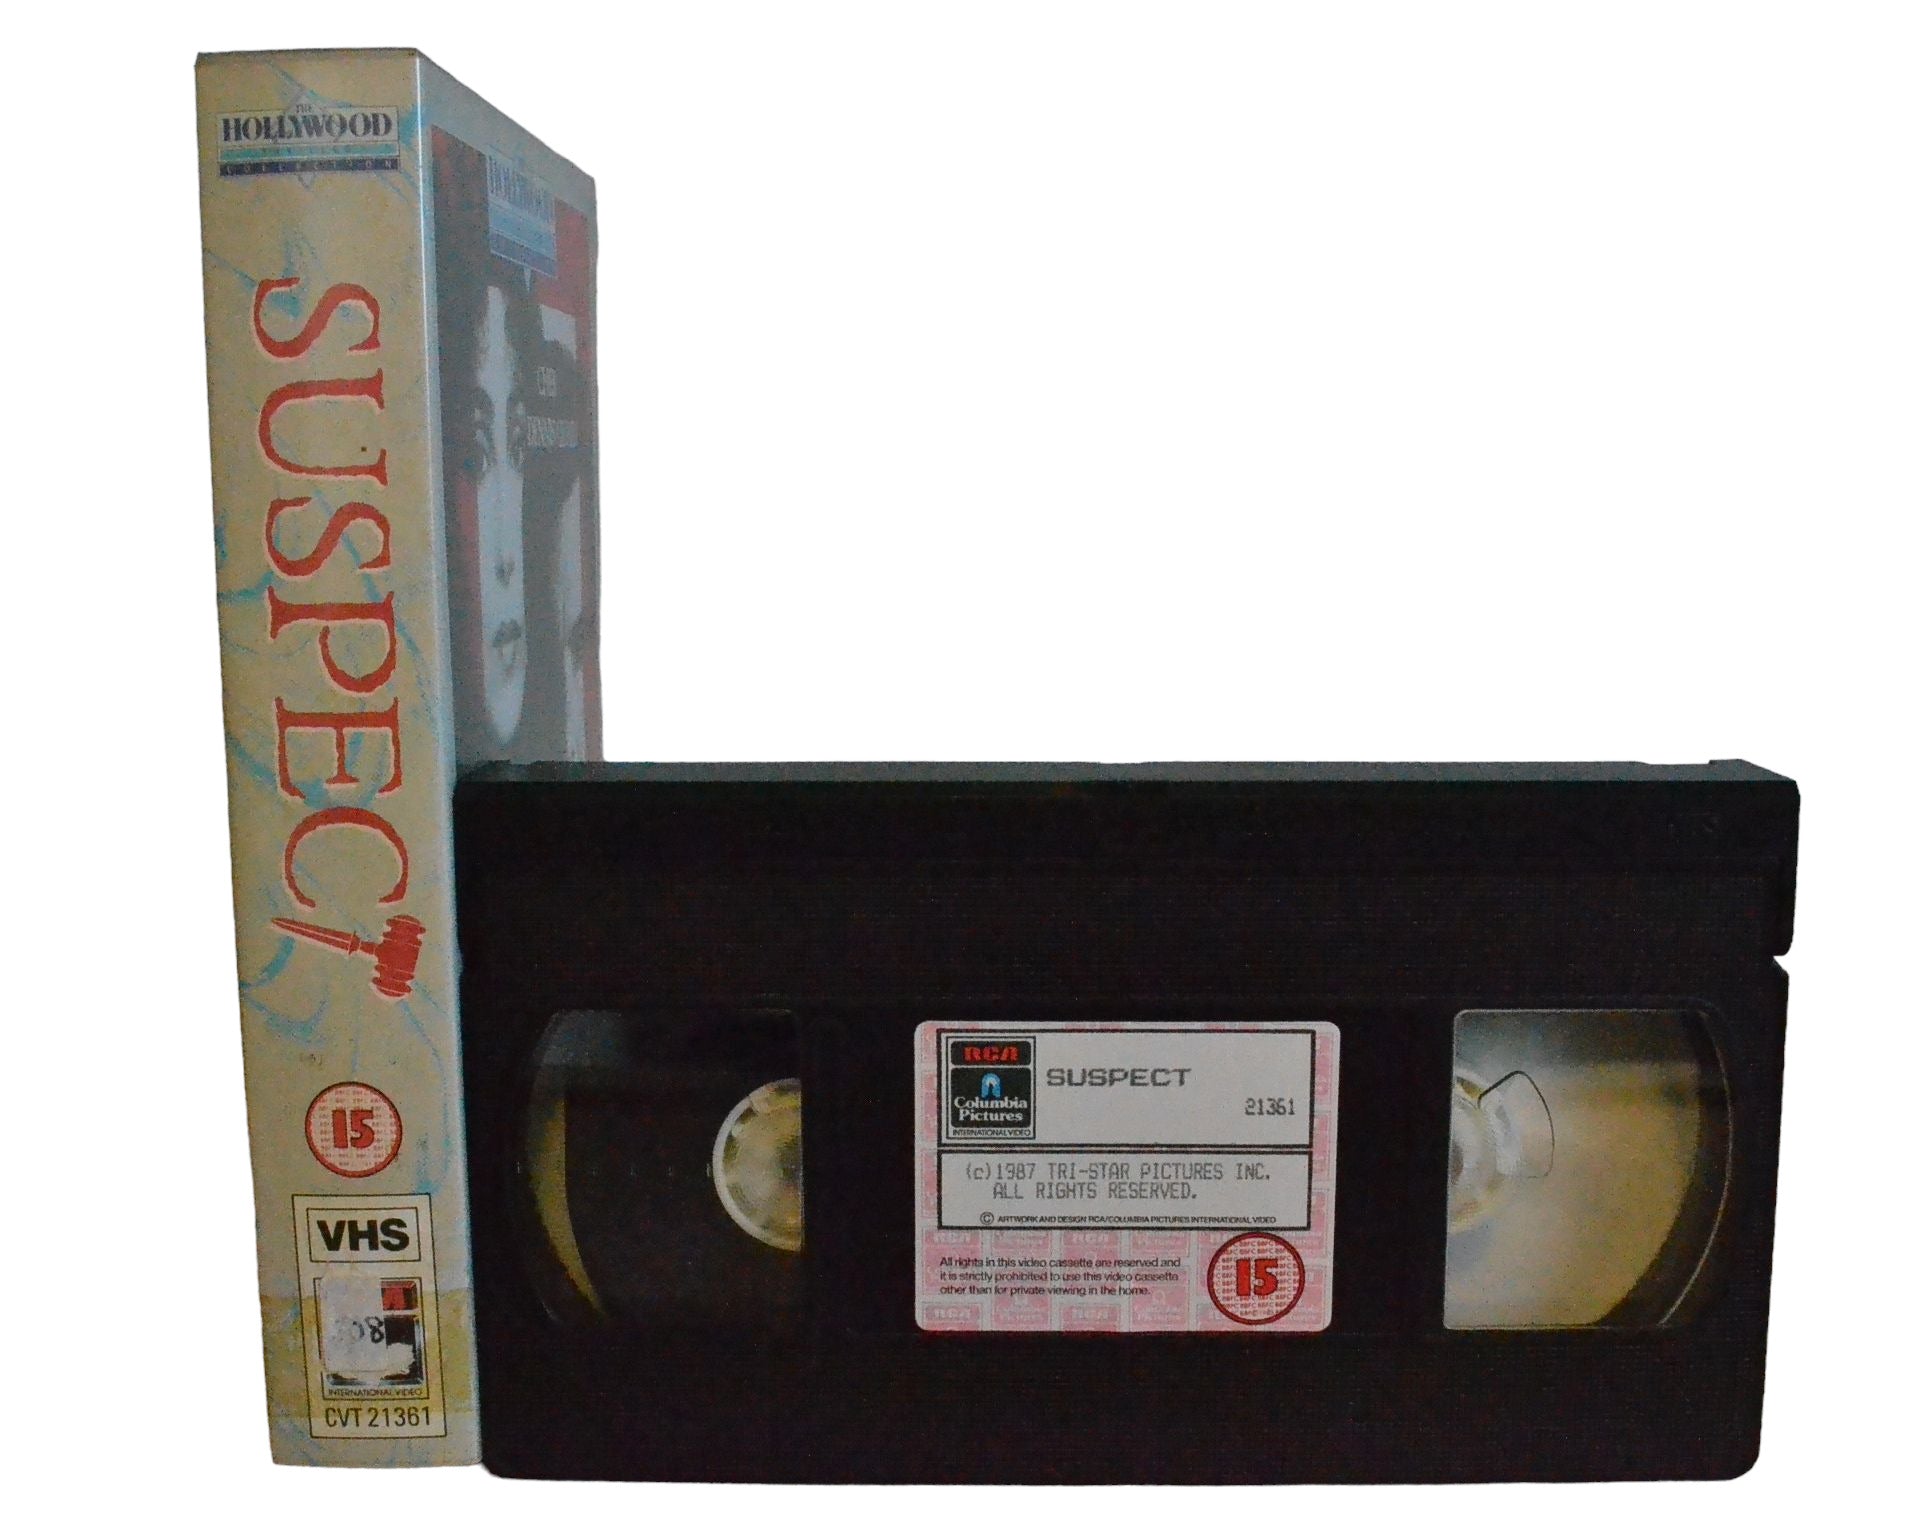 Suspect (Suspense.. Suspicion...) - Cher - Columbia Tristar Home Video - CVT21361 - Action - Pal - VHS-